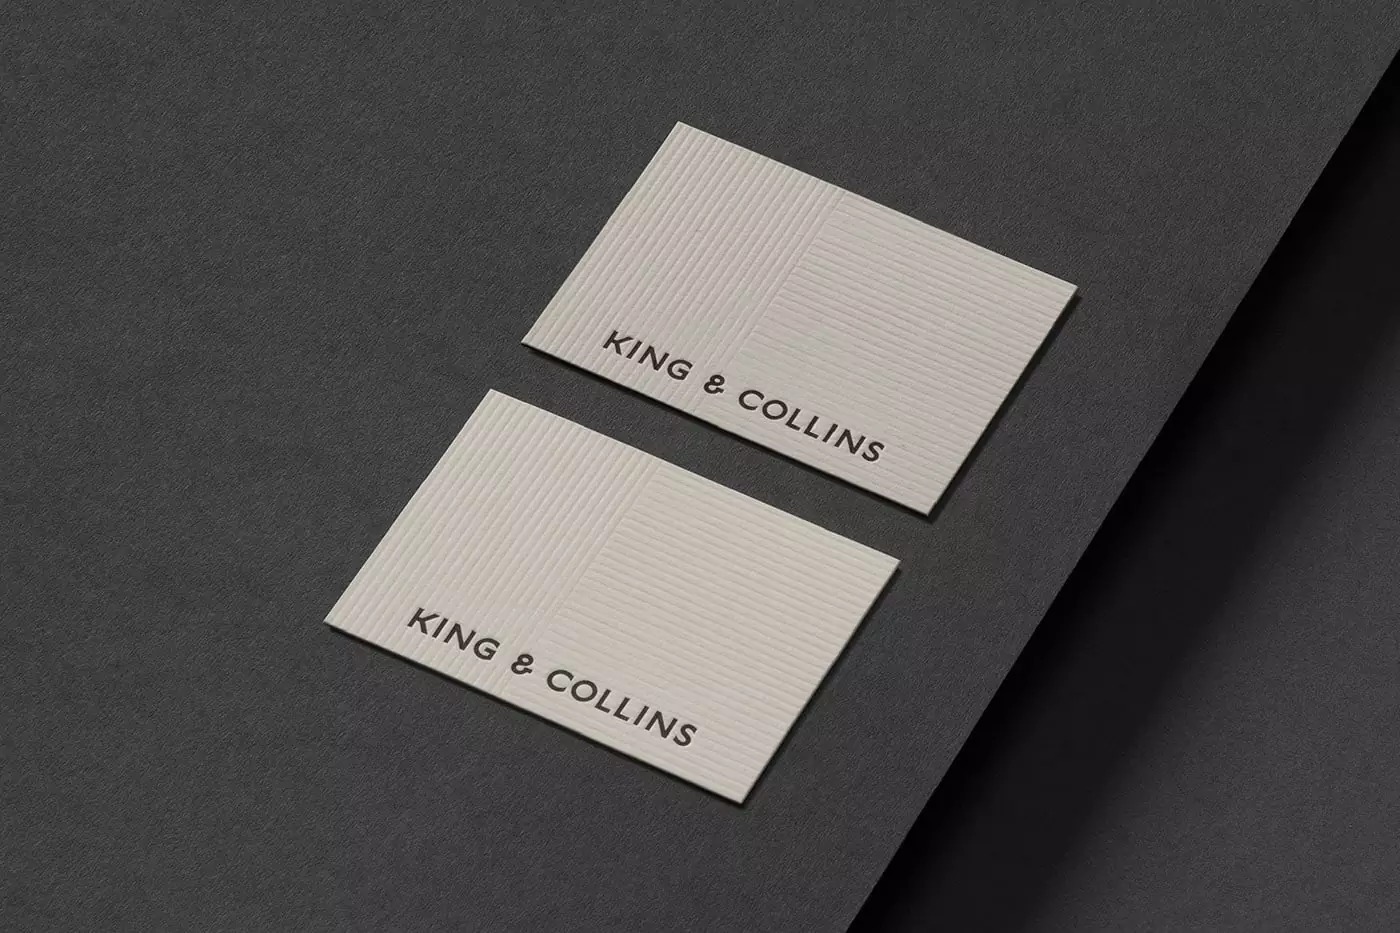 律师事务所King＆Collins品牌视觉设计